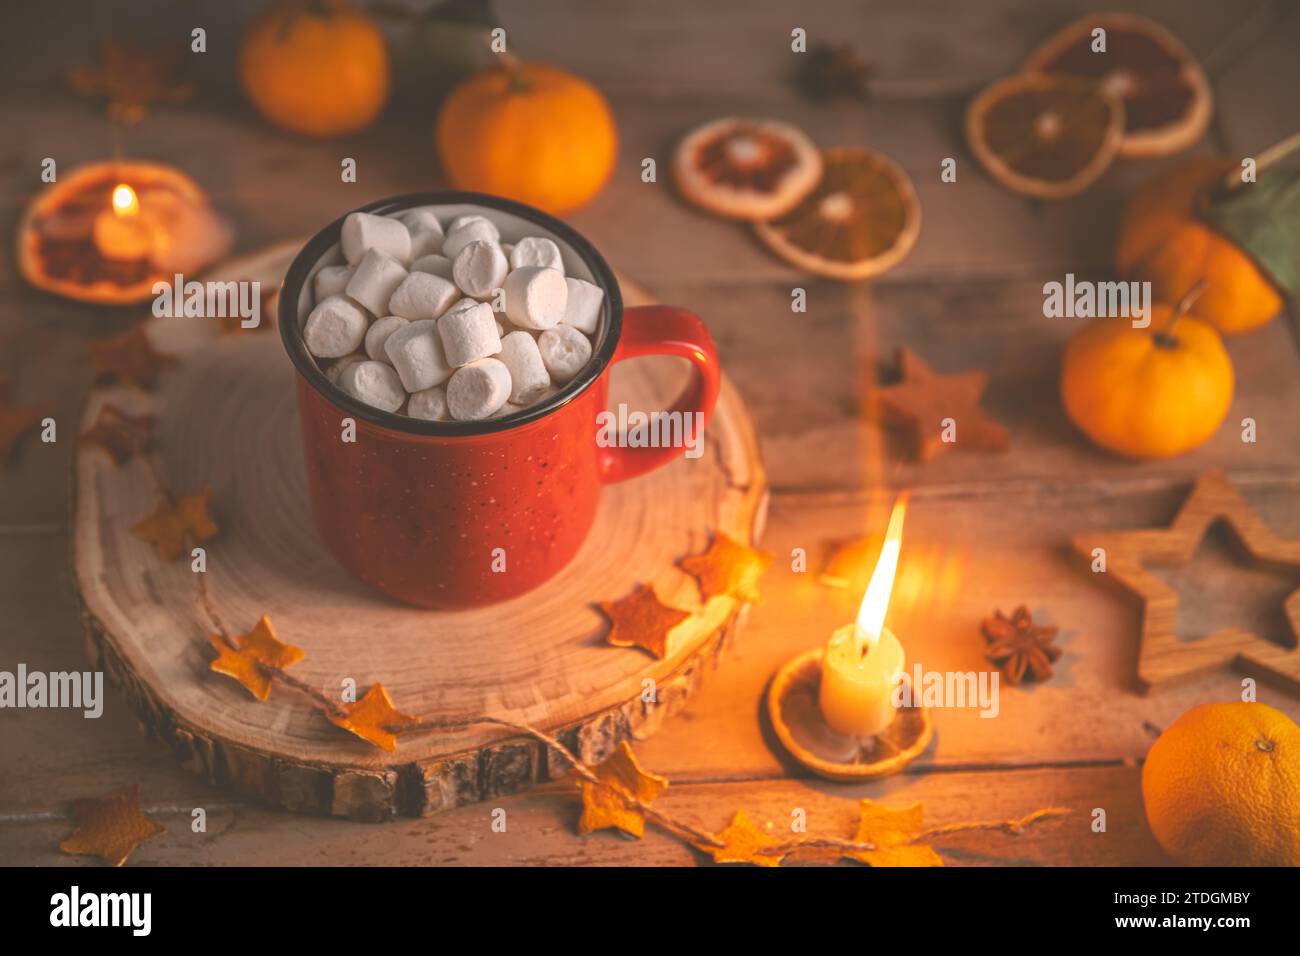 Niedliche, gemütliche Winterkomposition. Rote Tasse, Marshmallows, Weihnachtsbeleuchtung und Kerze. Silvester und weihnachten, Wärme, Komfort Stockfoto